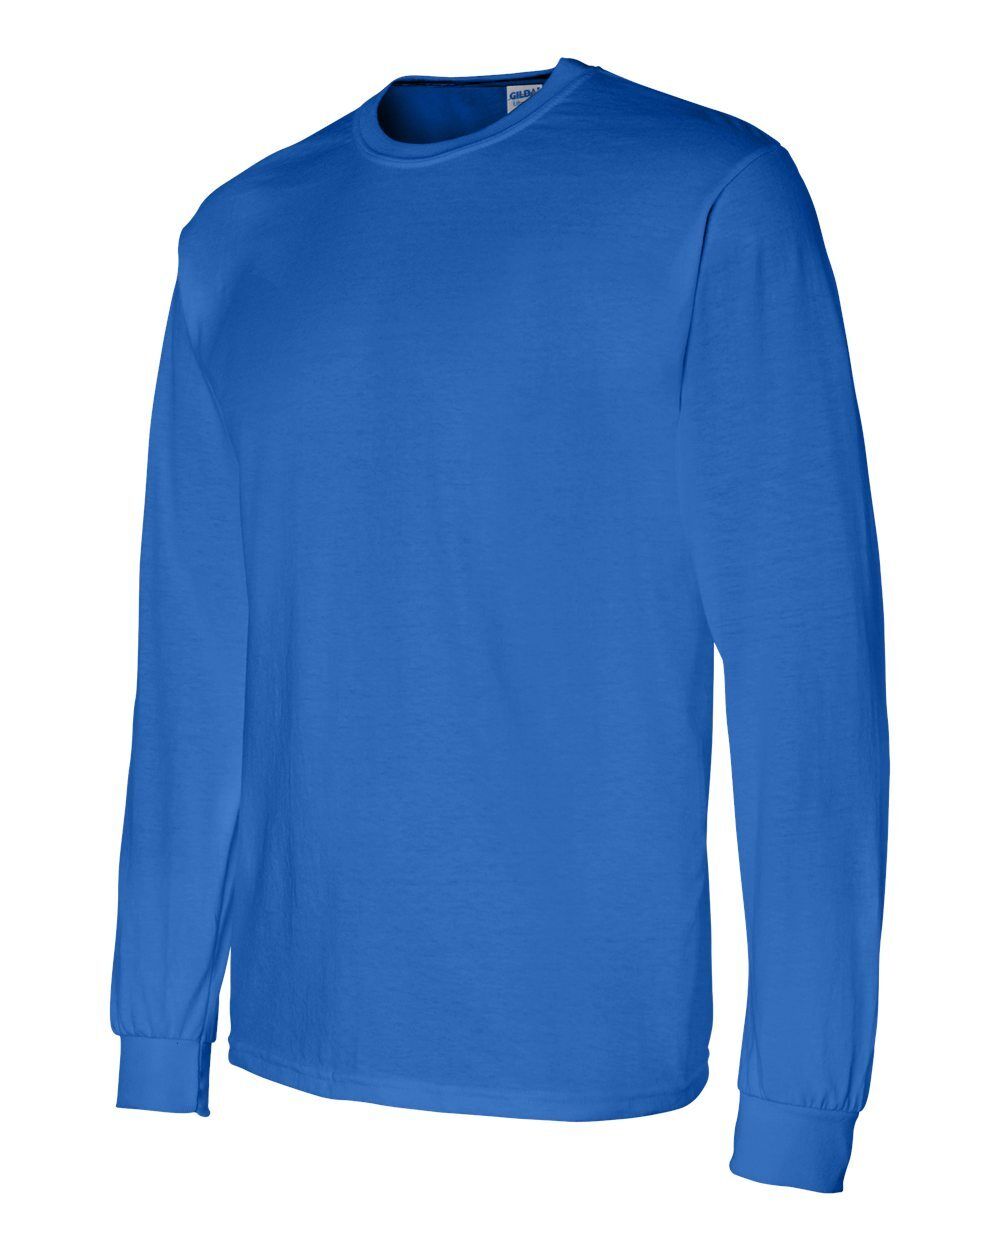 Embroidered Long-Sleeved T-Shirt - Bluebird BT2824 Без бренда - фотография #6